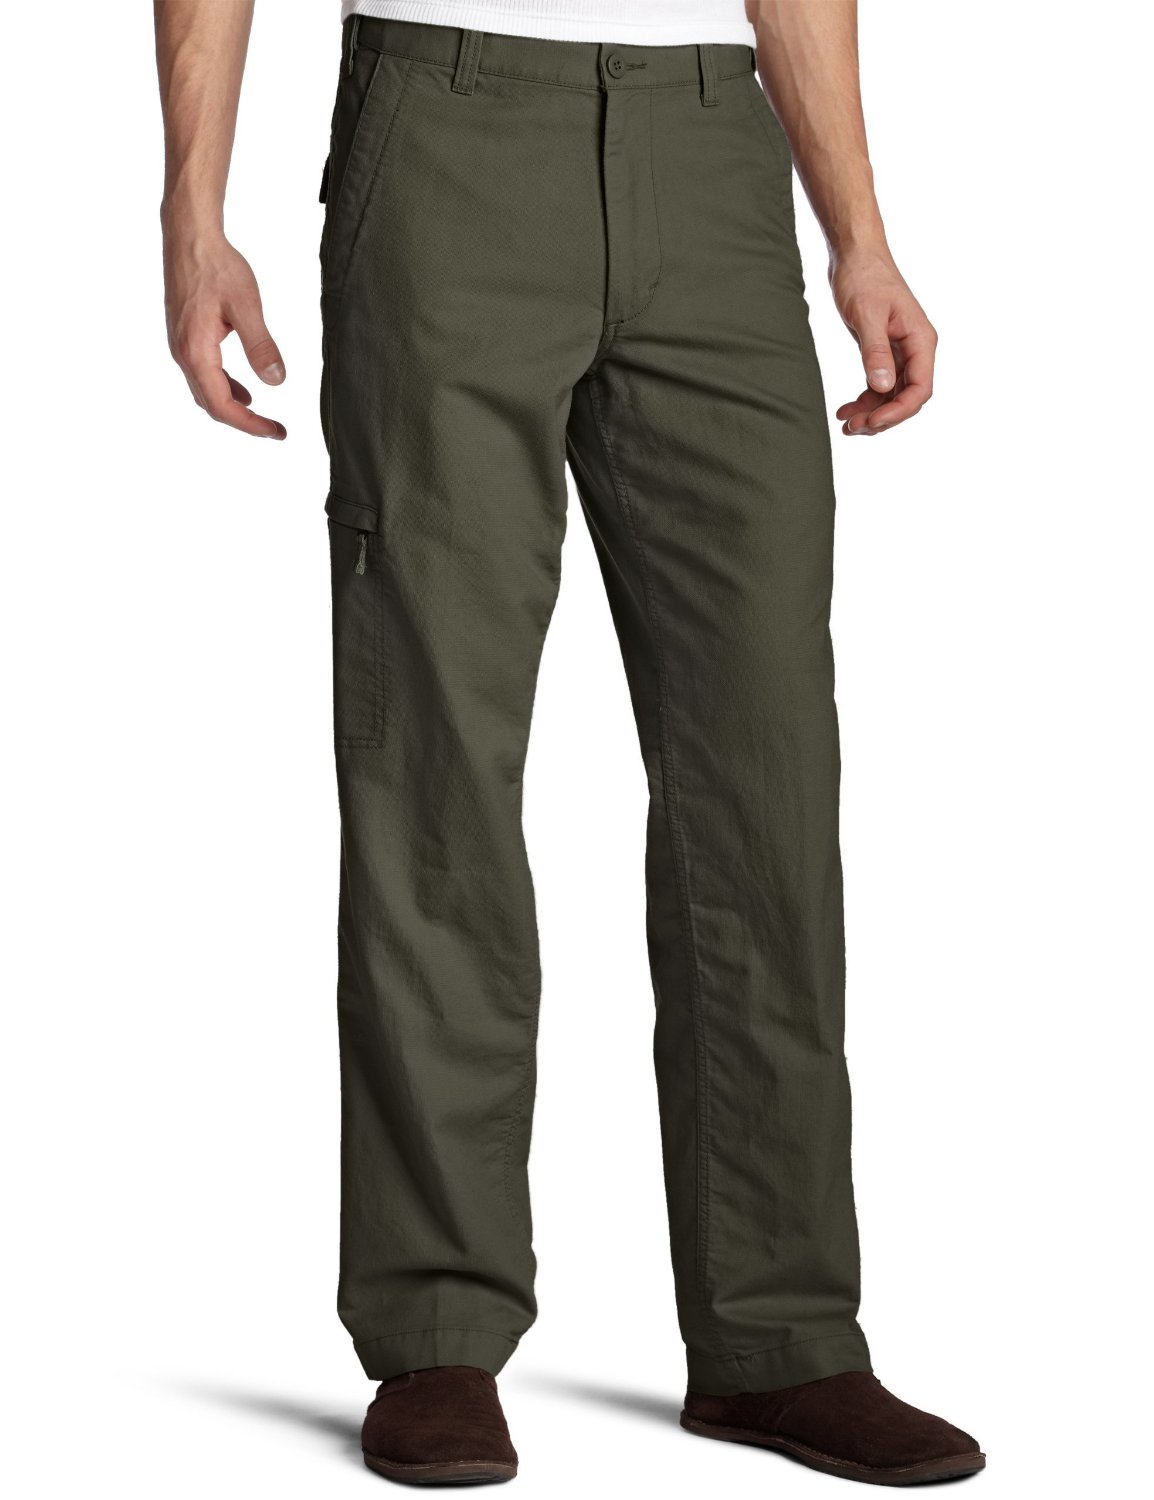 Comfort Cargo Pants: Flat Front Comfort Cargo Pants